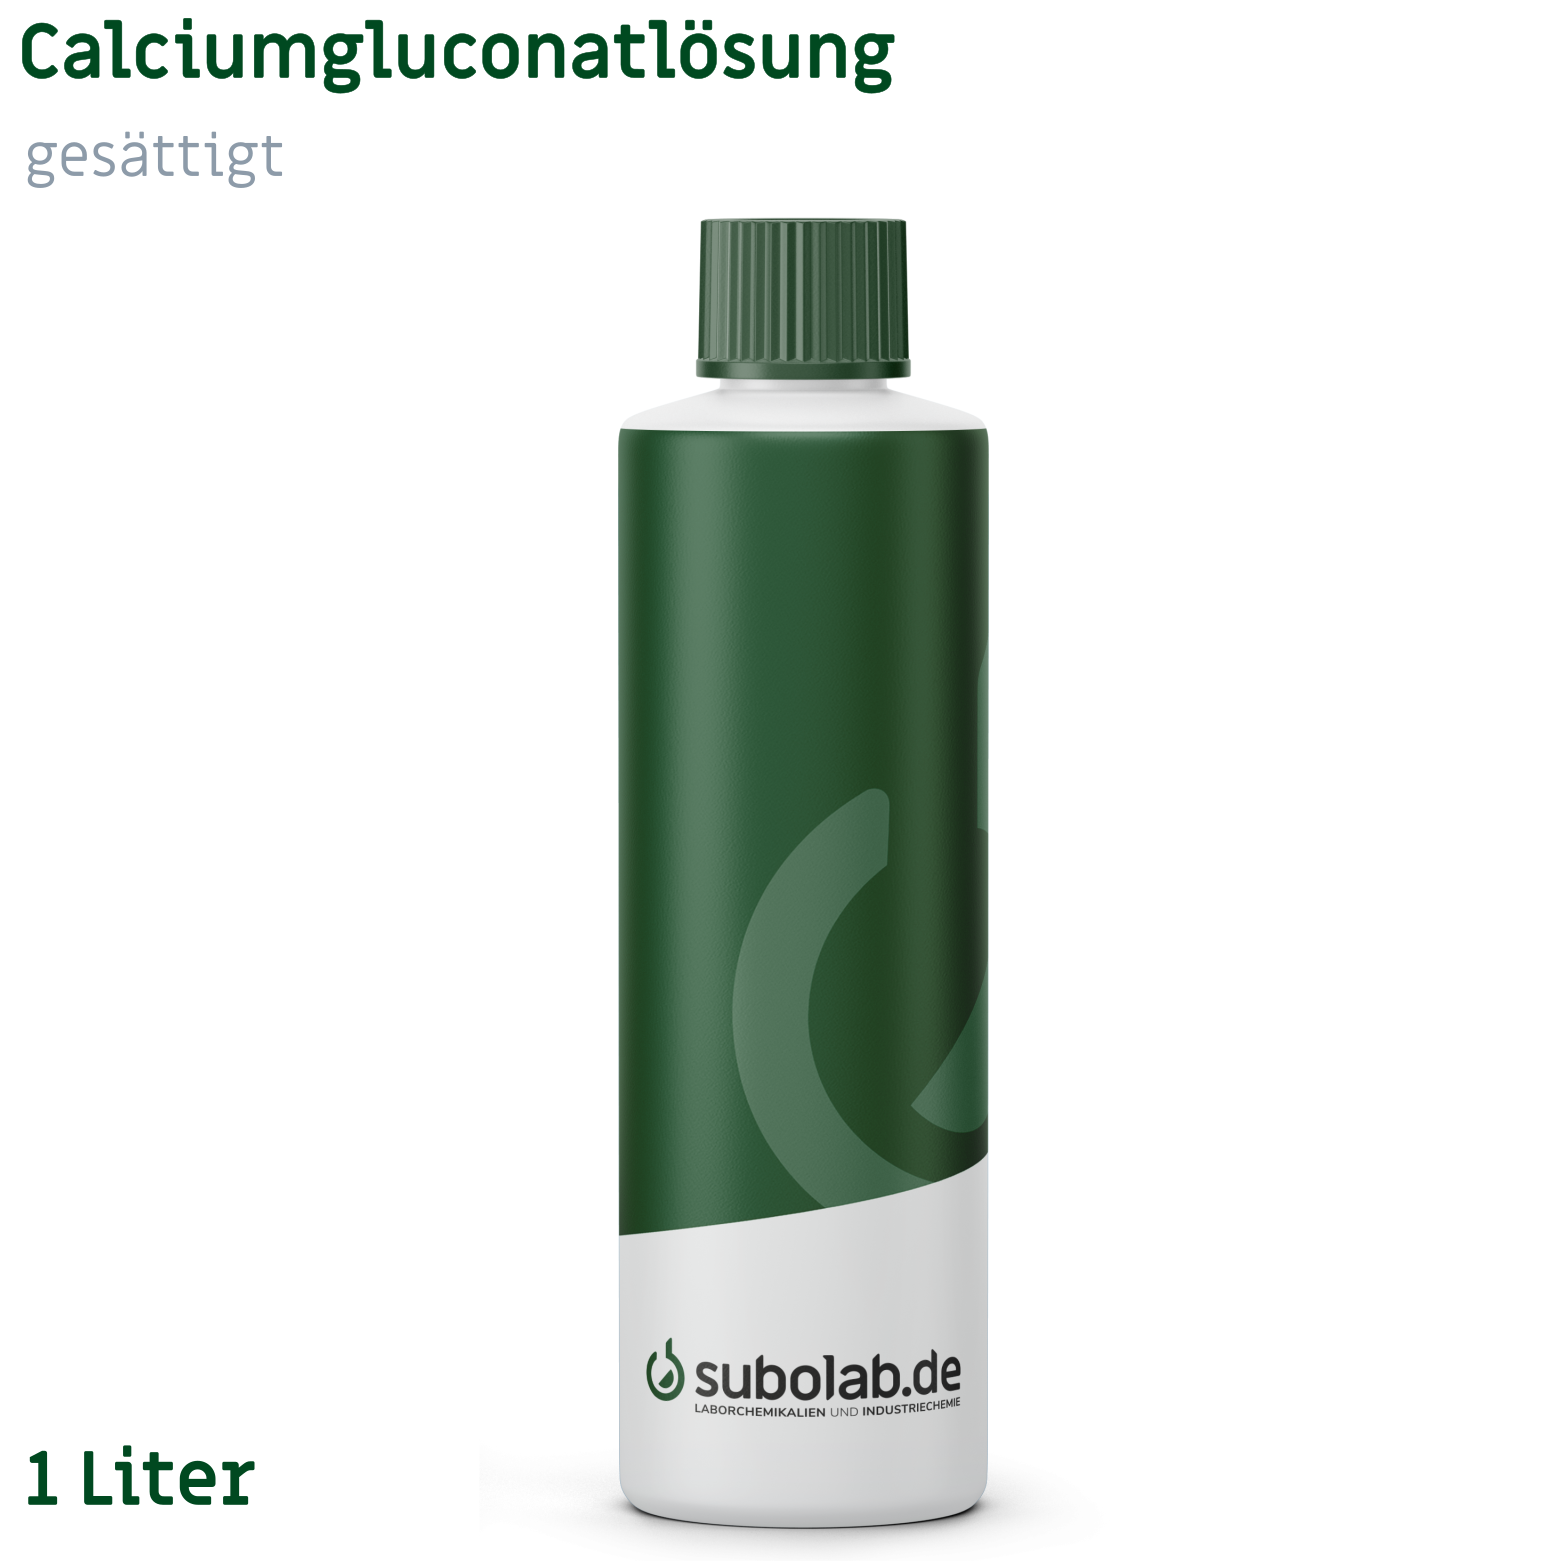 Bild von Calciumgluconatlösung gesättigt (1 Liter)